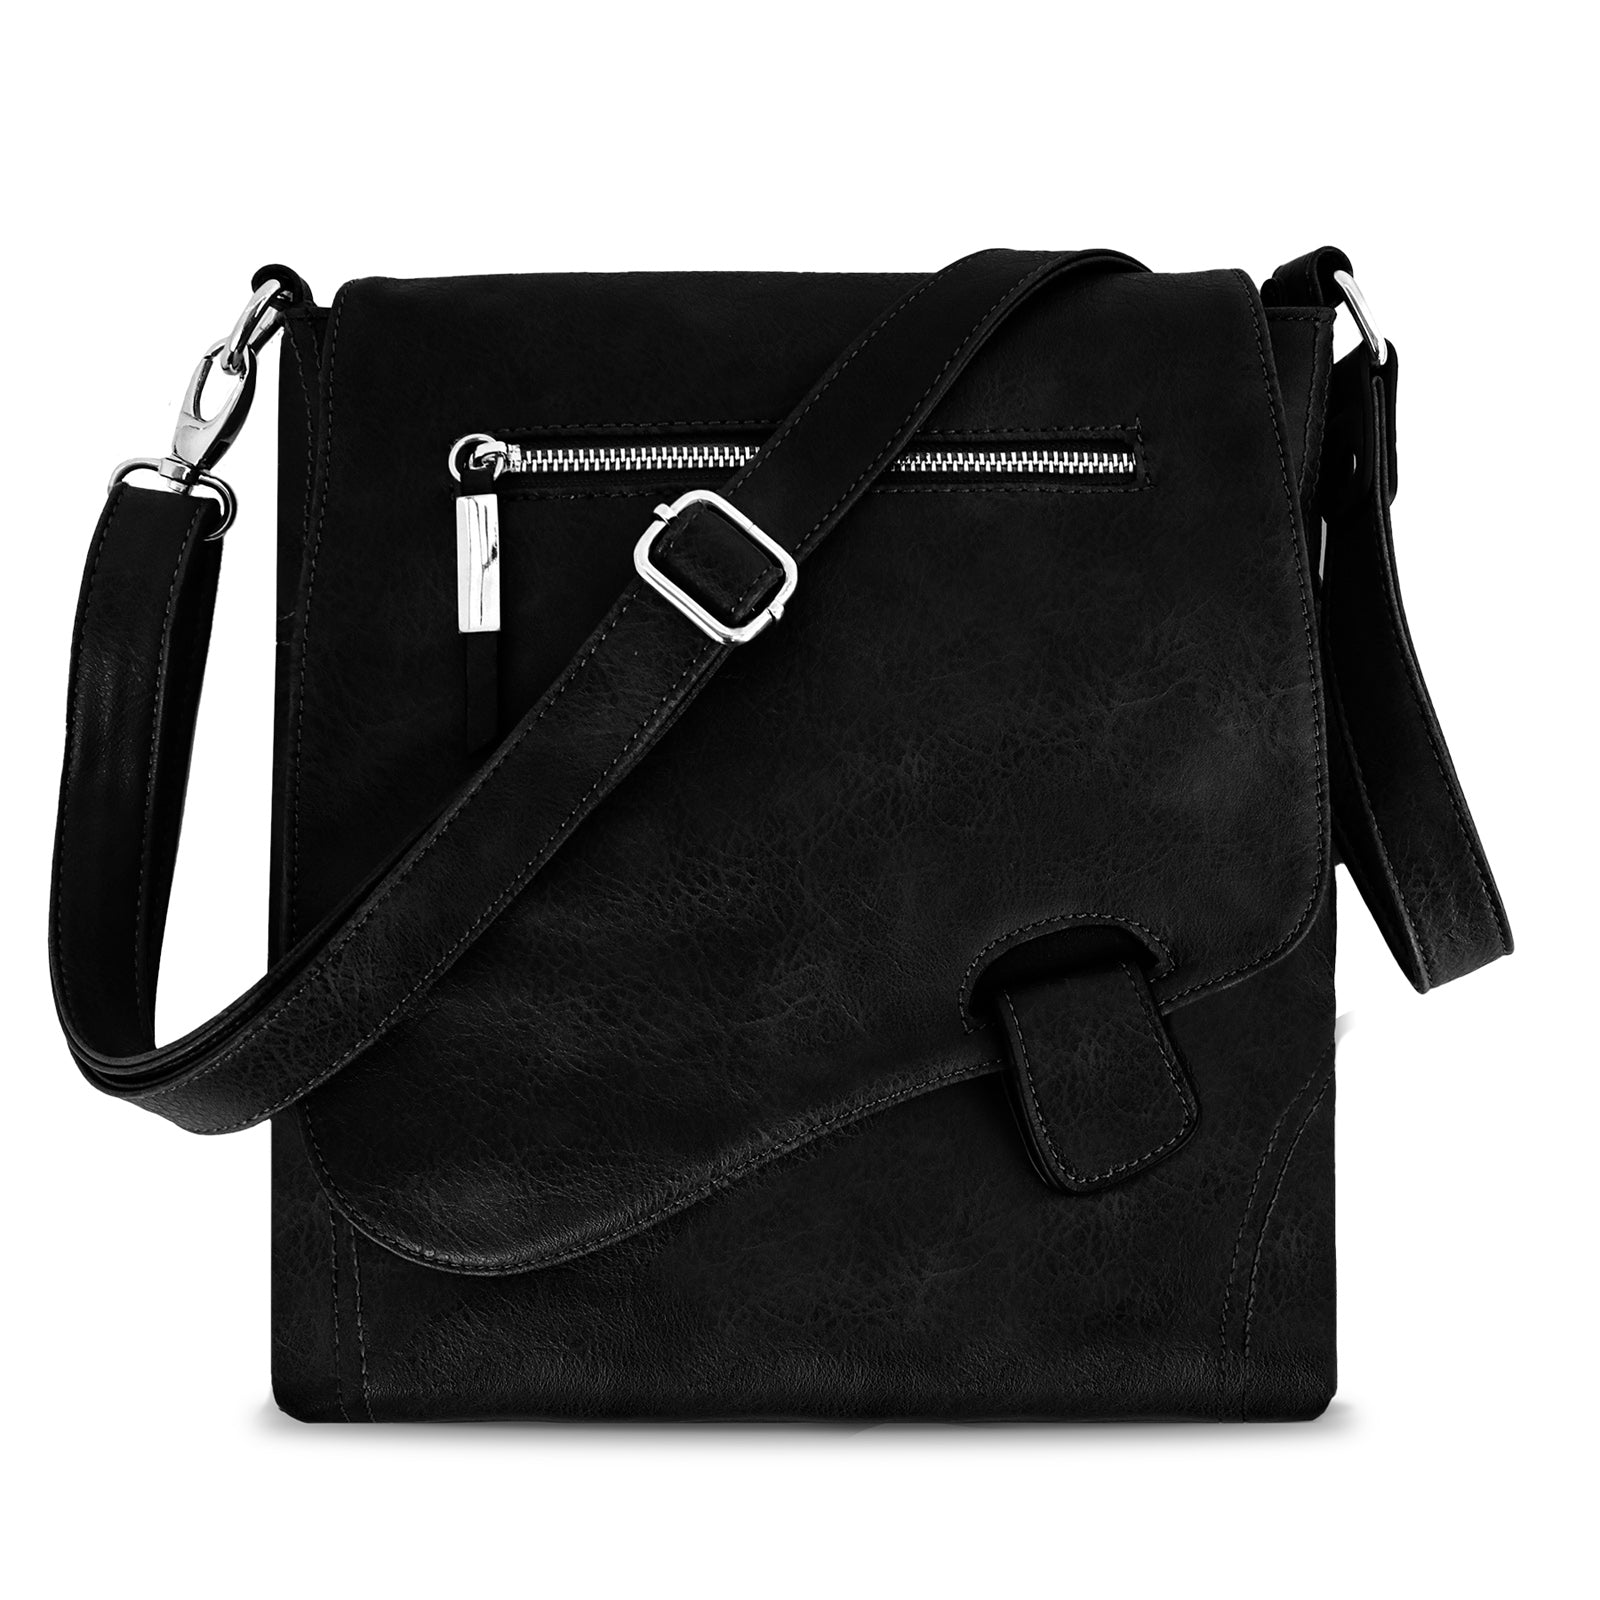 TAN.TOMI Aktentasche, Damen höchste Qualität Synthetikleder langlebiger Rucksack, Damen Handtasche, Schultertasche, Laptop-Tasche, unisex Vintage-Klassik Business-Tasche, geeignet für berufstätige Frauen.